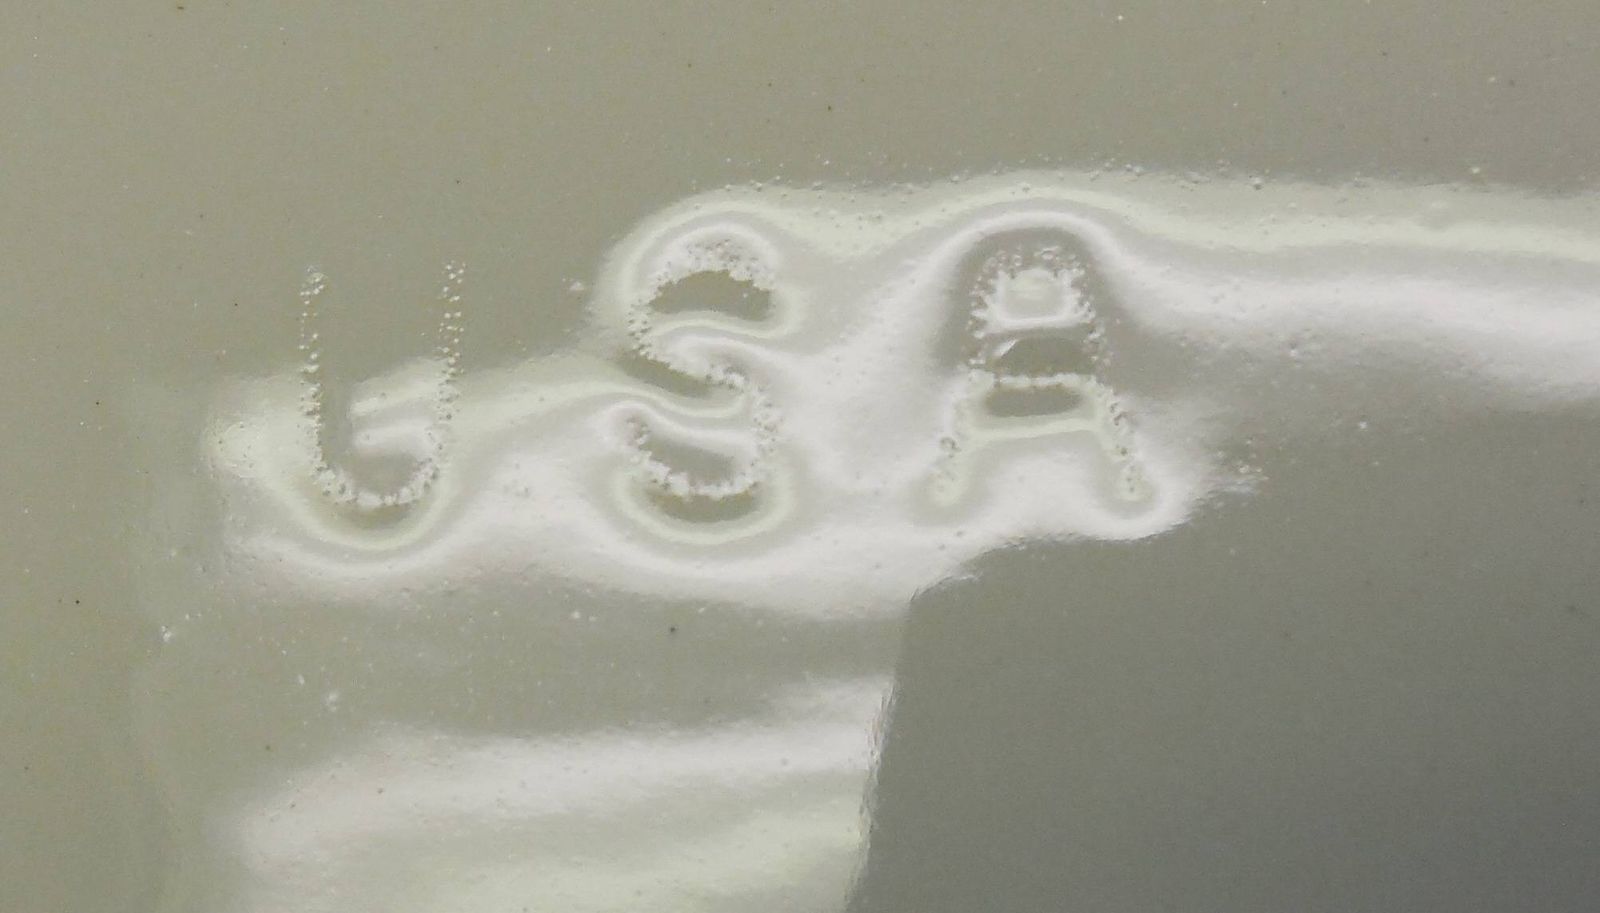 Rectangular Off White Glazed Planter Incized USA Mark van osdell's leavenworth kansas.jpg